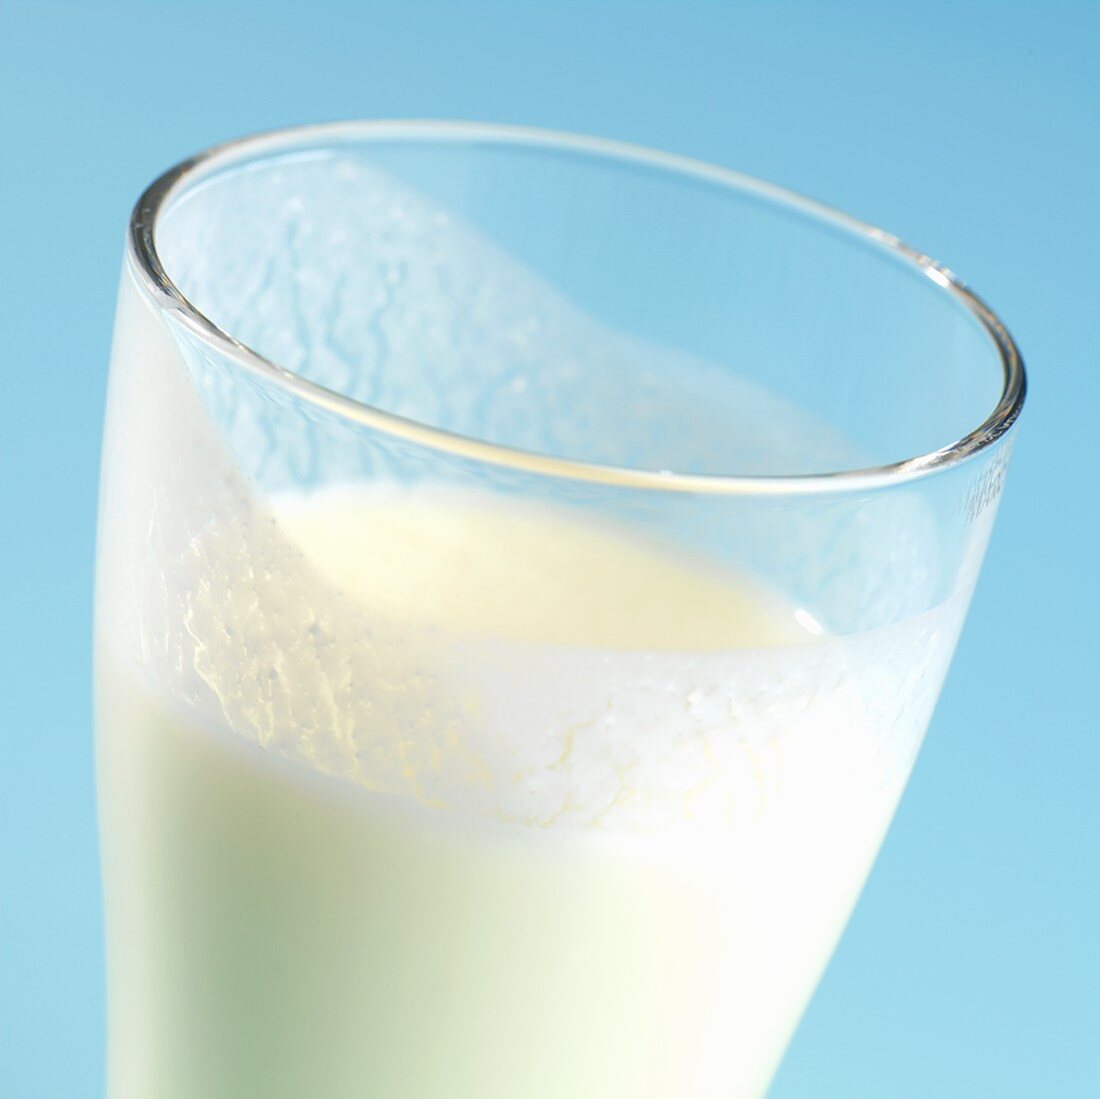 Buttermilk in a glass